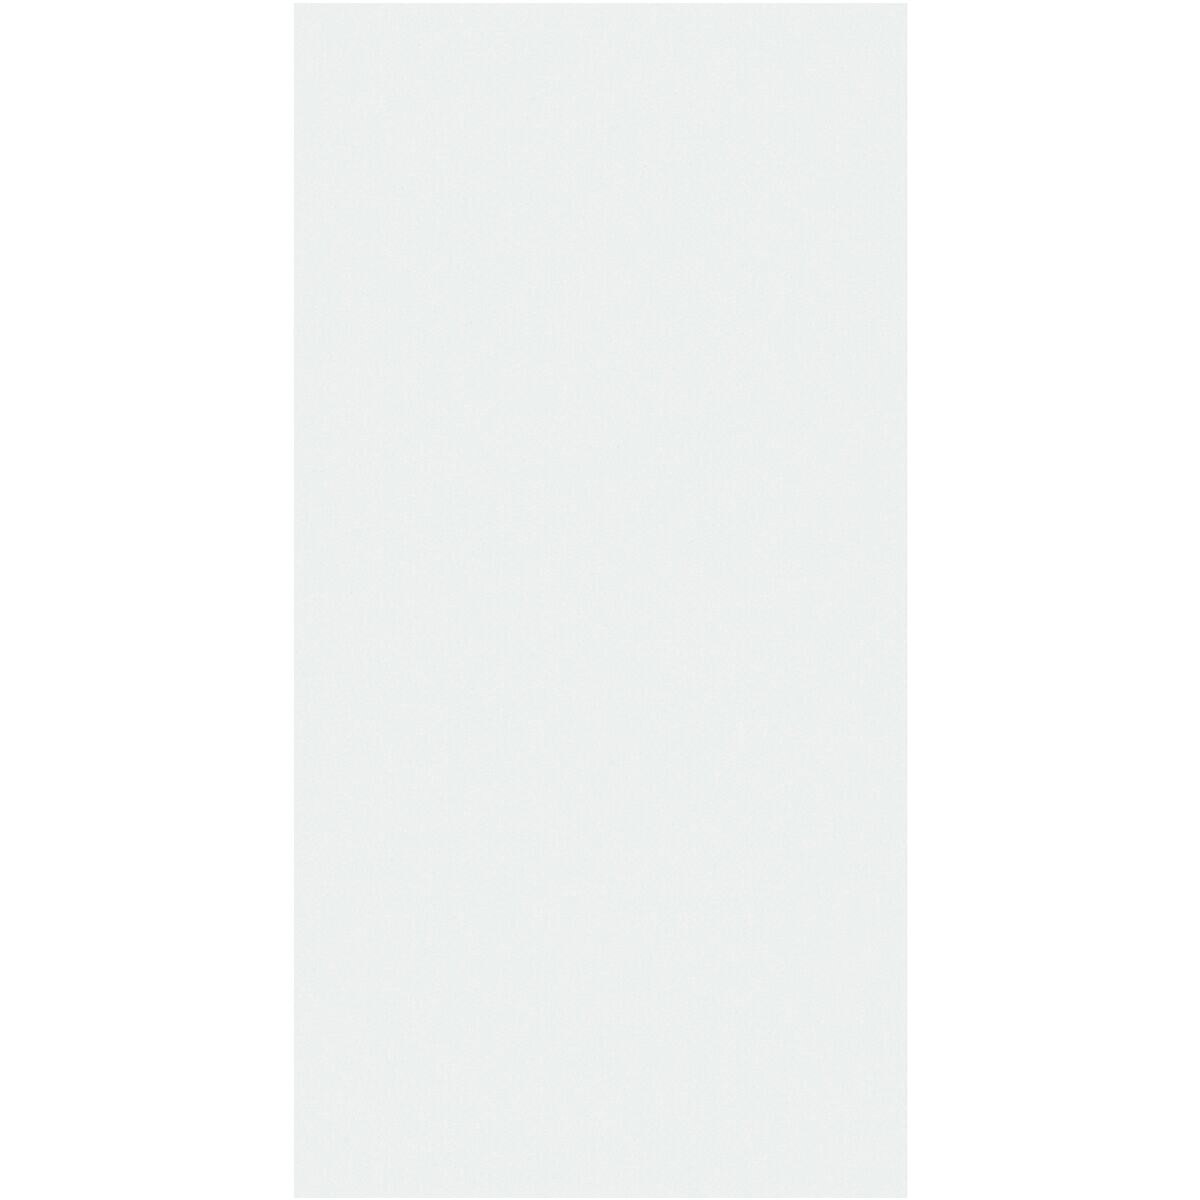 Legamaster Whiteboardfolie WRAP-UP 7-106201 101 x 150 cm